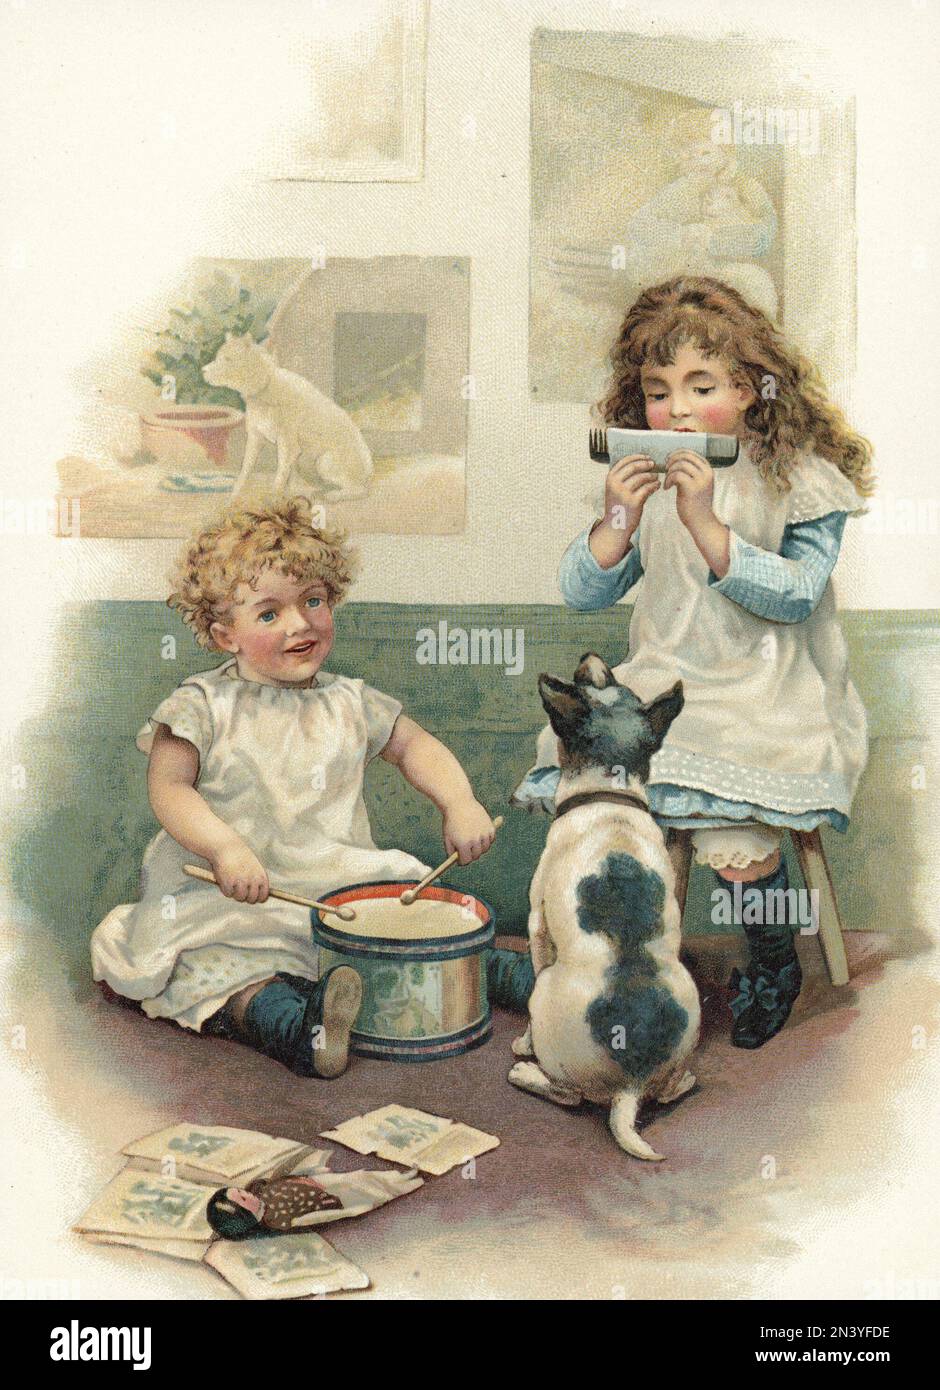 Deux enfants jouant pour leur chien sur cette illustration du tournant du siècle 1800-1900. La fille à droite joue un peigne en ayant un morceau de papier sur lequel elle souffle. Banque D'Images